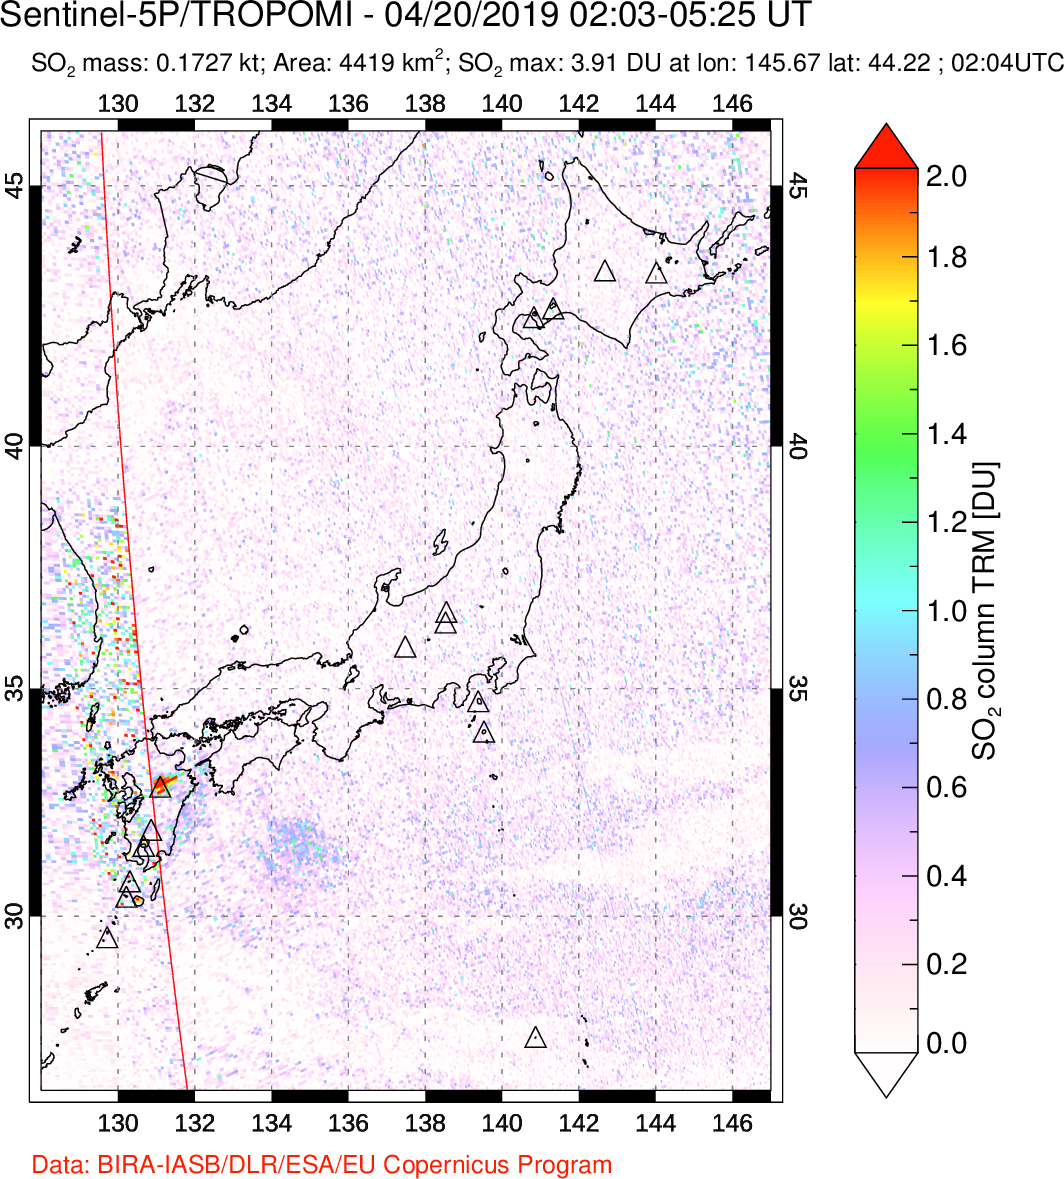 A sulfur dioxide image over Japan on Apr 20, 2019.